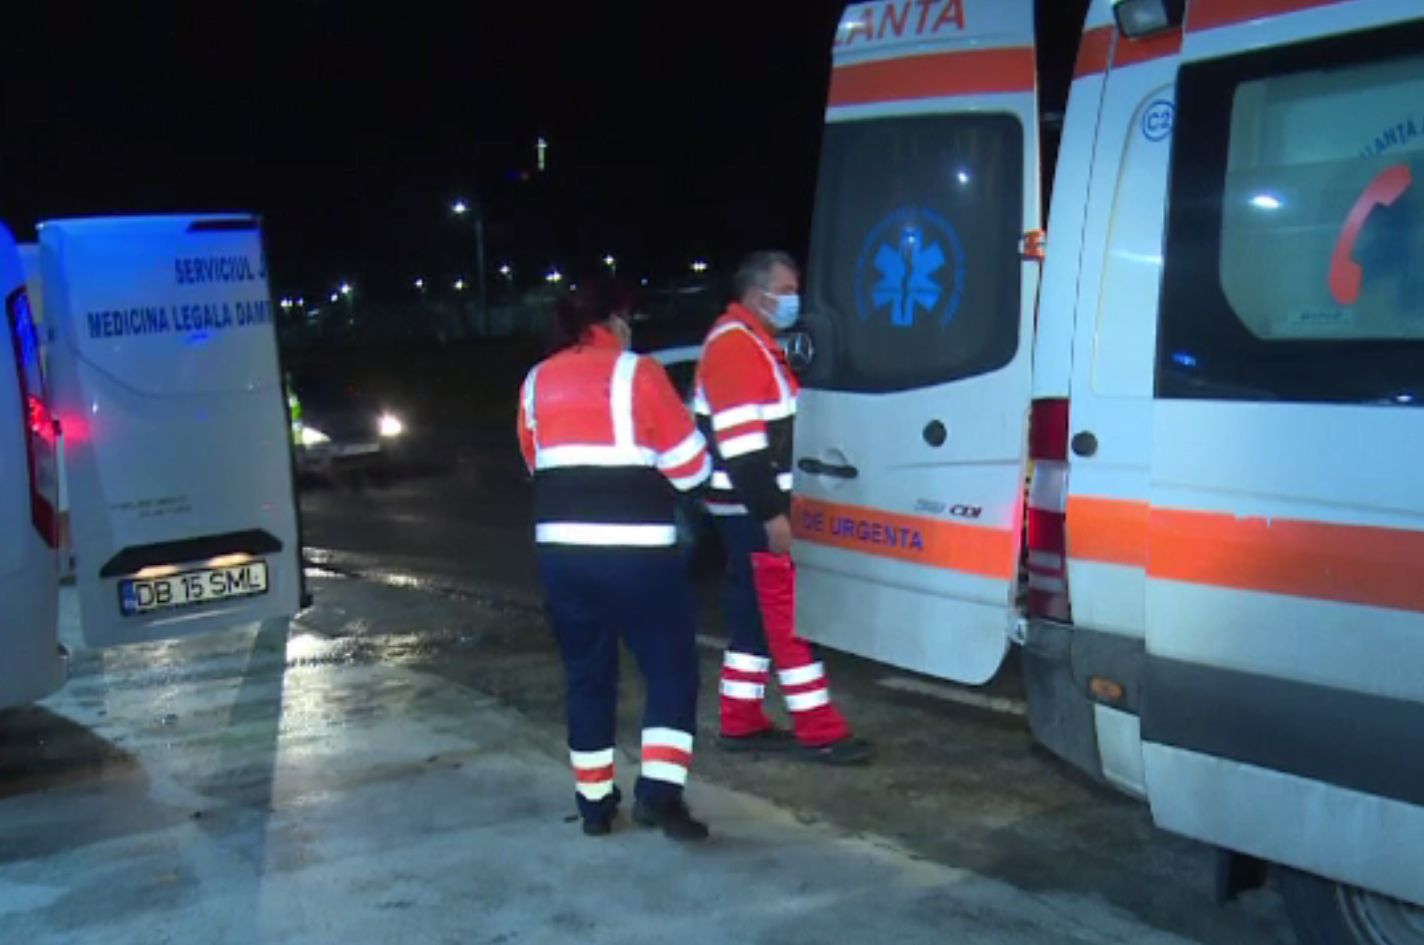 Pieton accidentat mortal pe un drum național, în Dâmbovița. Omul nu purta vestă reflectorizantă și nu avea nici lanternă